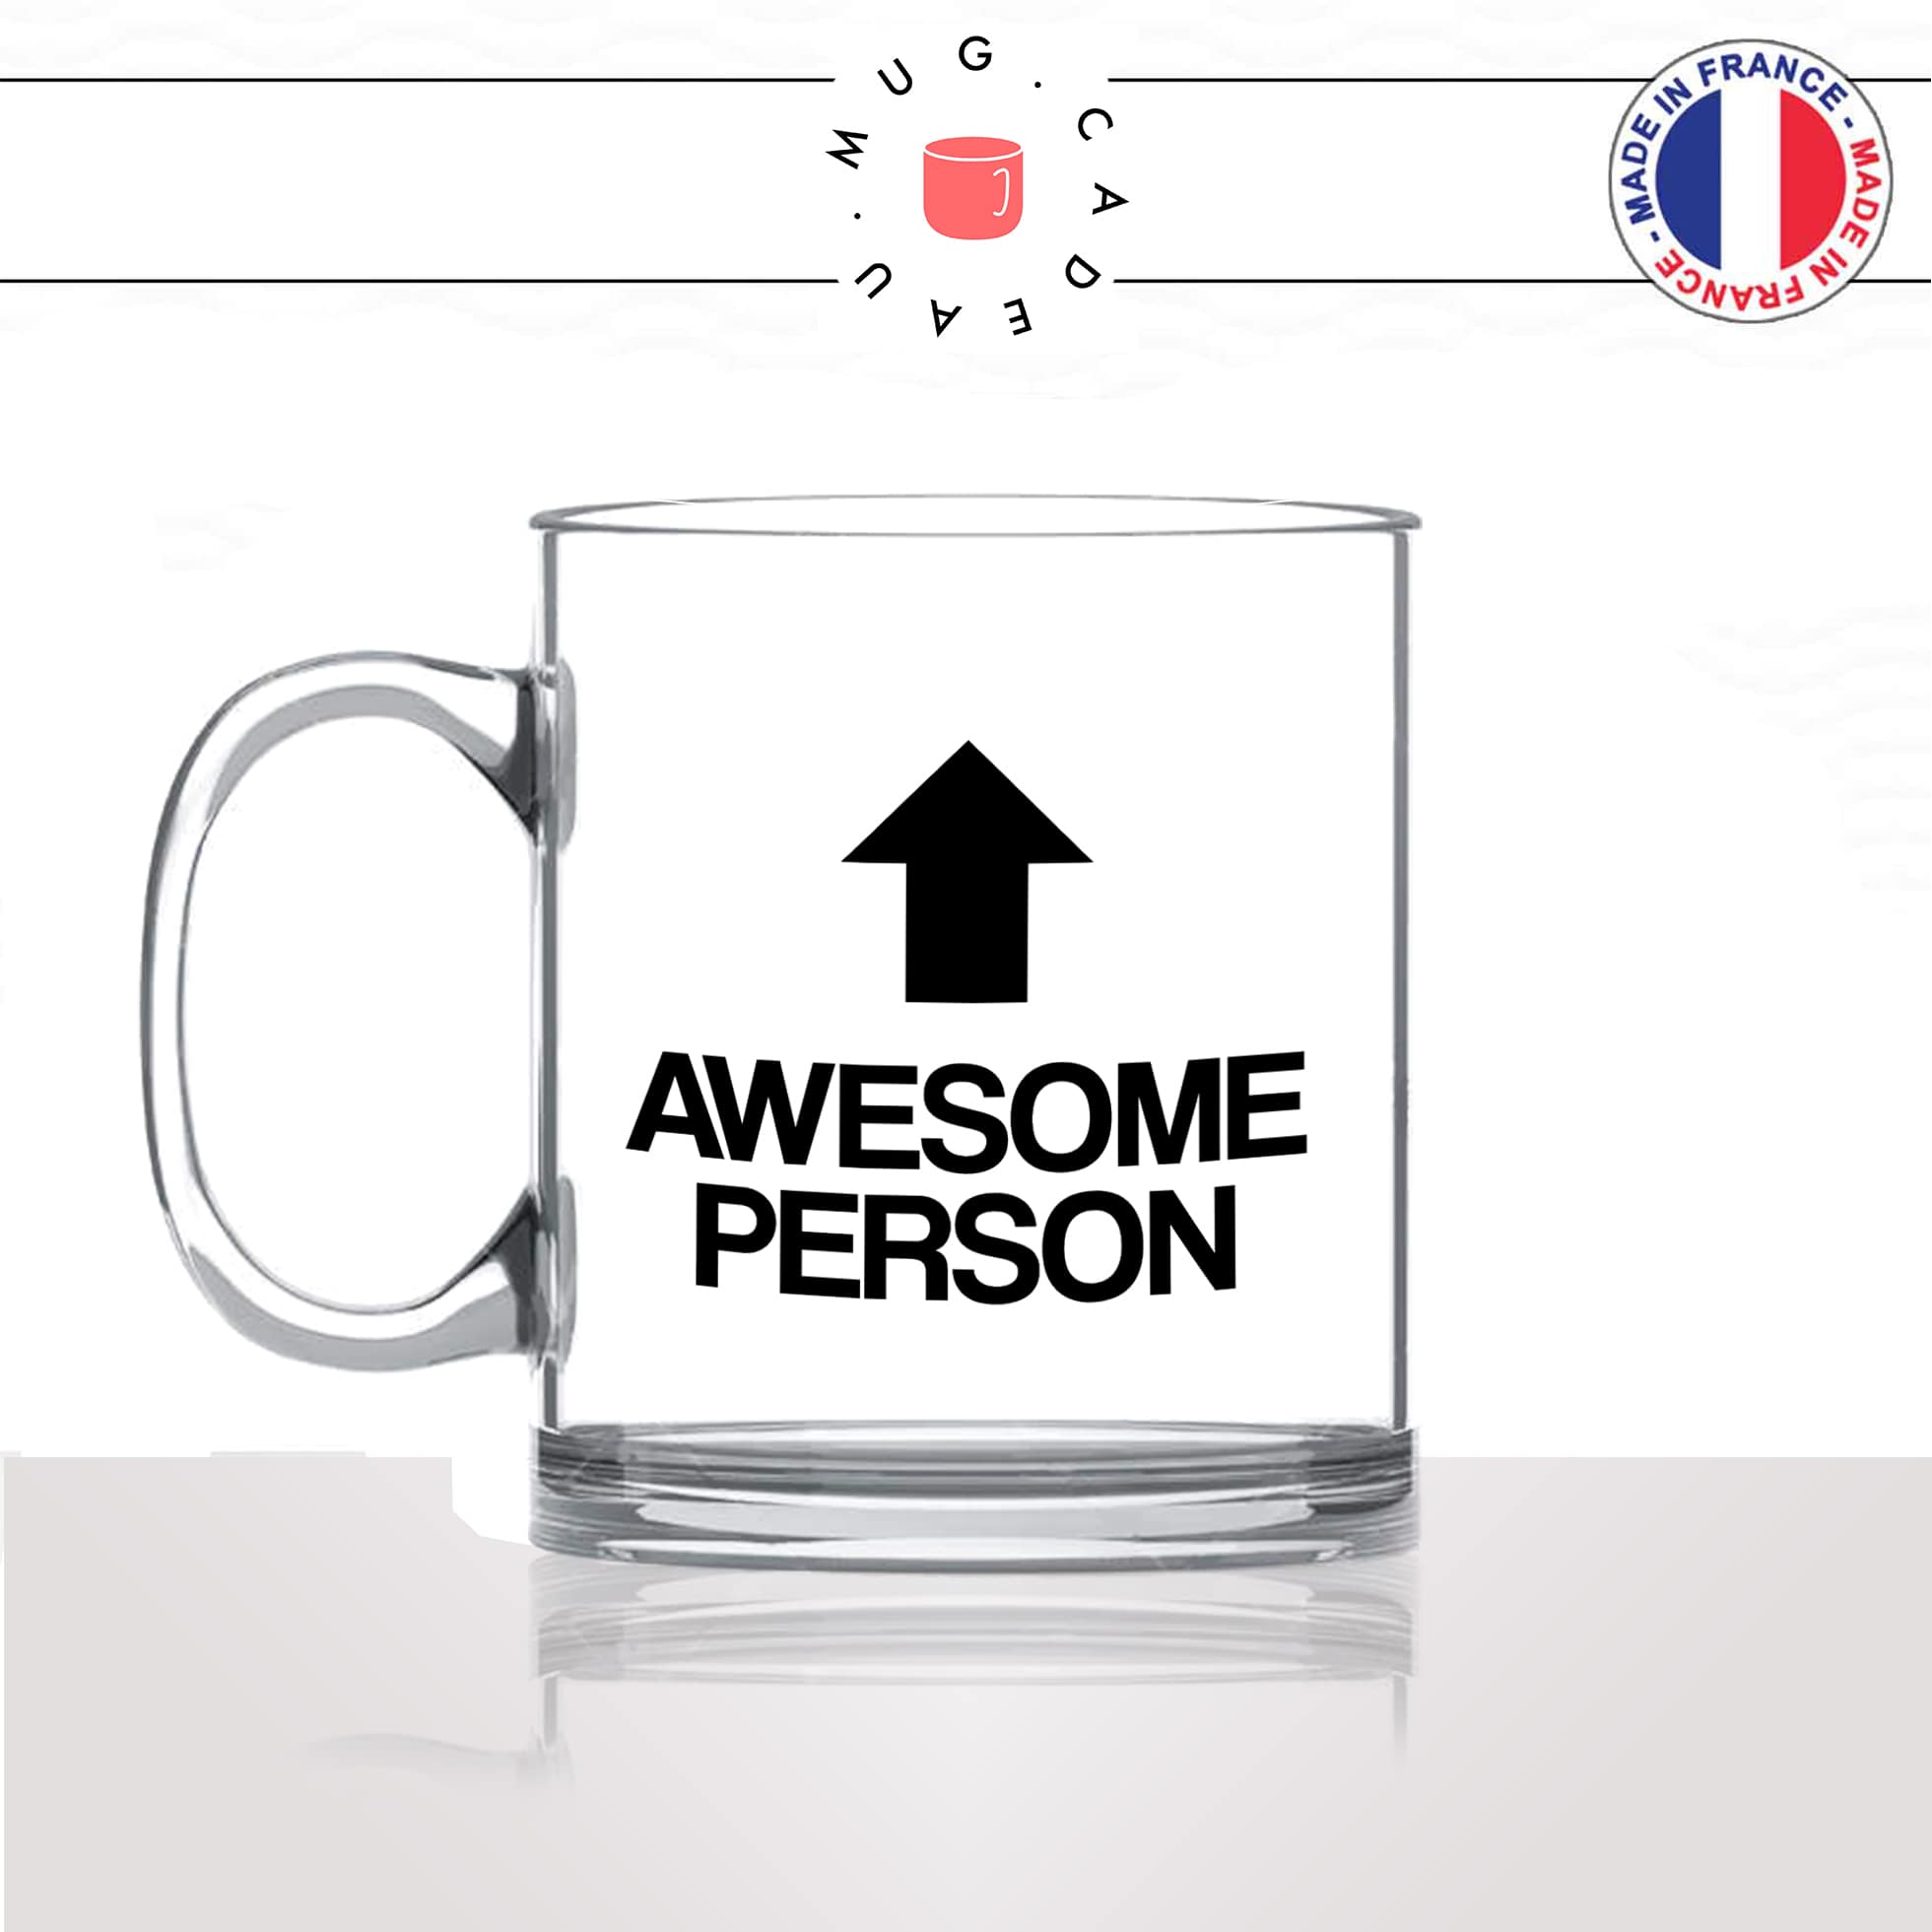 mug-tasse-en-verre-transparent-glass-awesome-person-femme-homme-copine-collegue-decoration-humour-idée-cadeau-fun-cool-café-thé-original-min